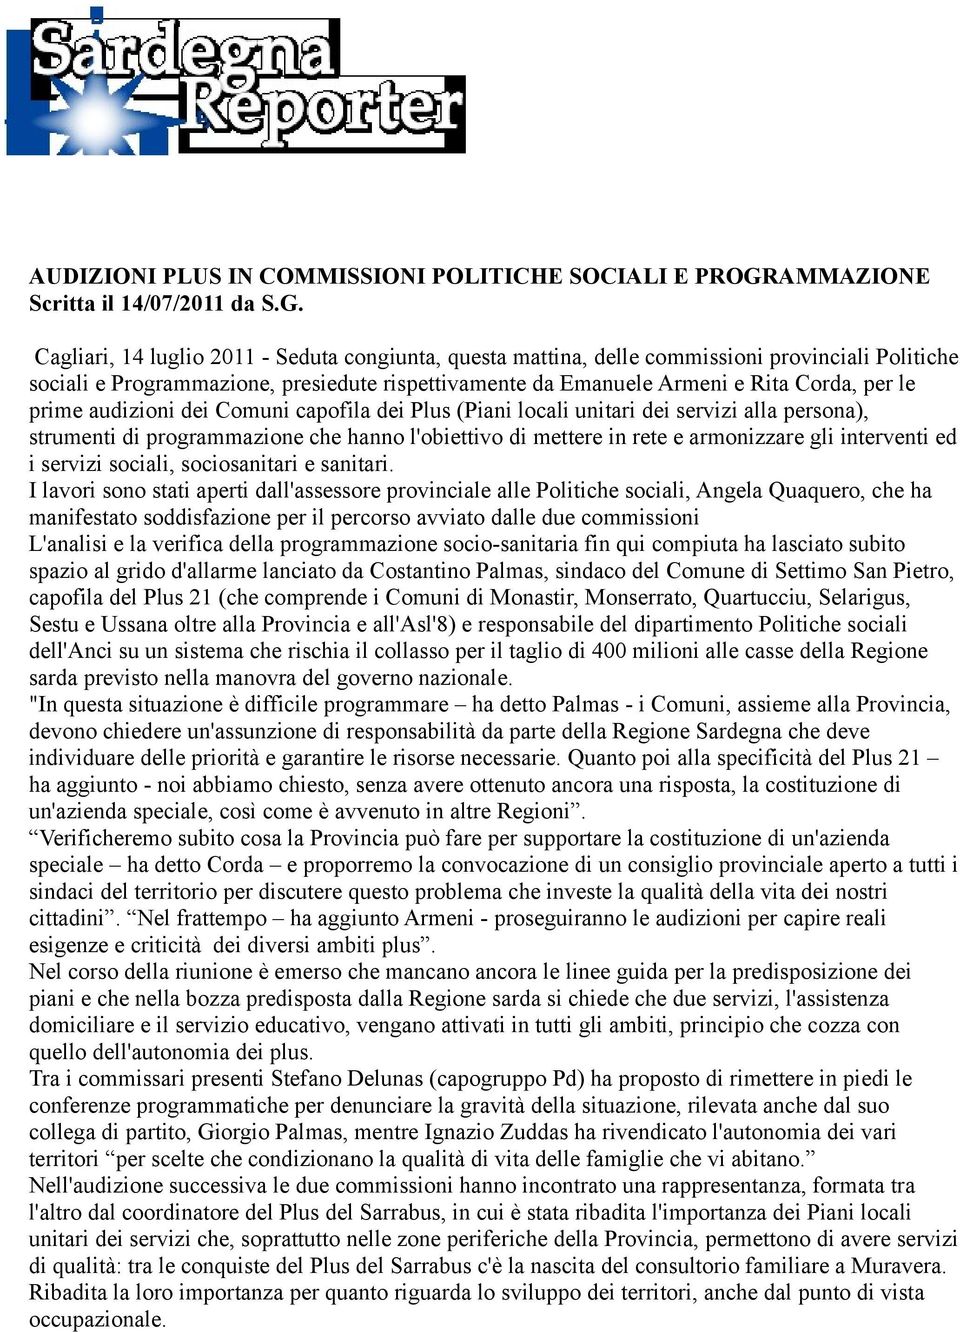 Cagliari, 14 luglio 2011 - Seduta congiunta, questa mattina, delle commissioni provinciali Politiche sociali e Programmazione, presiedute rispettivamente da Emanuele Armeni e Rita Corda, per le prime